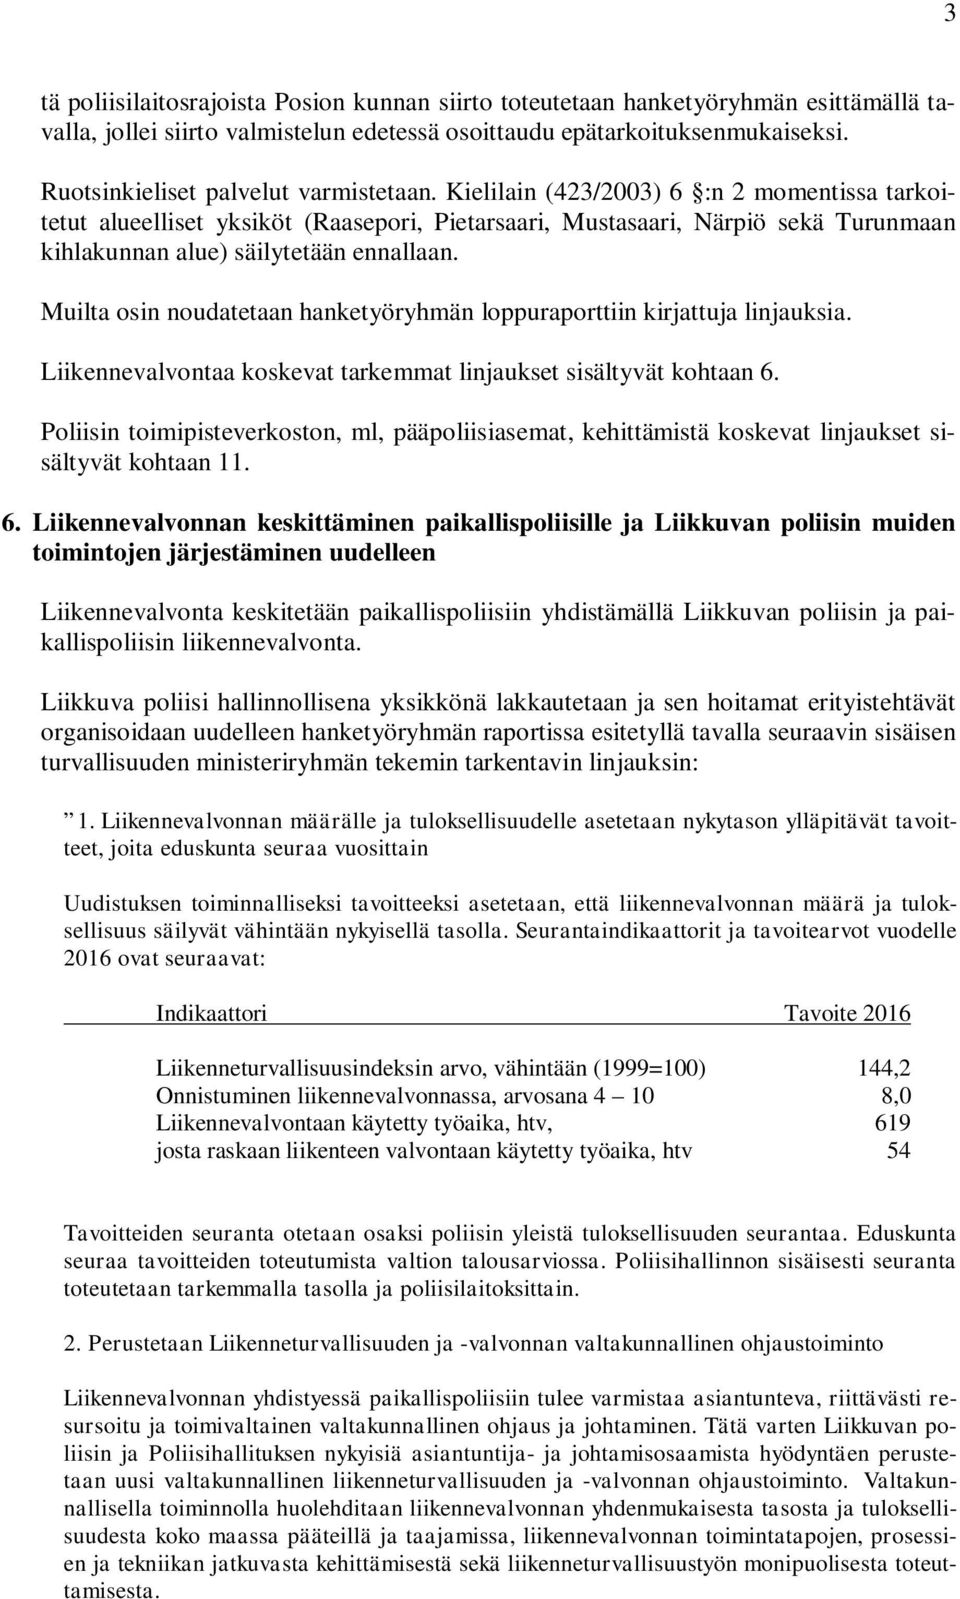 Kielilain (423/2003) 6 :n 2 momentissa tarkoitetut alueelliset yksiköt (Raasepori, Pietarsaari, Mustasaari, Närpiö sekä Turunmaan kihlakunnan alue) säilytetään ennallaan.